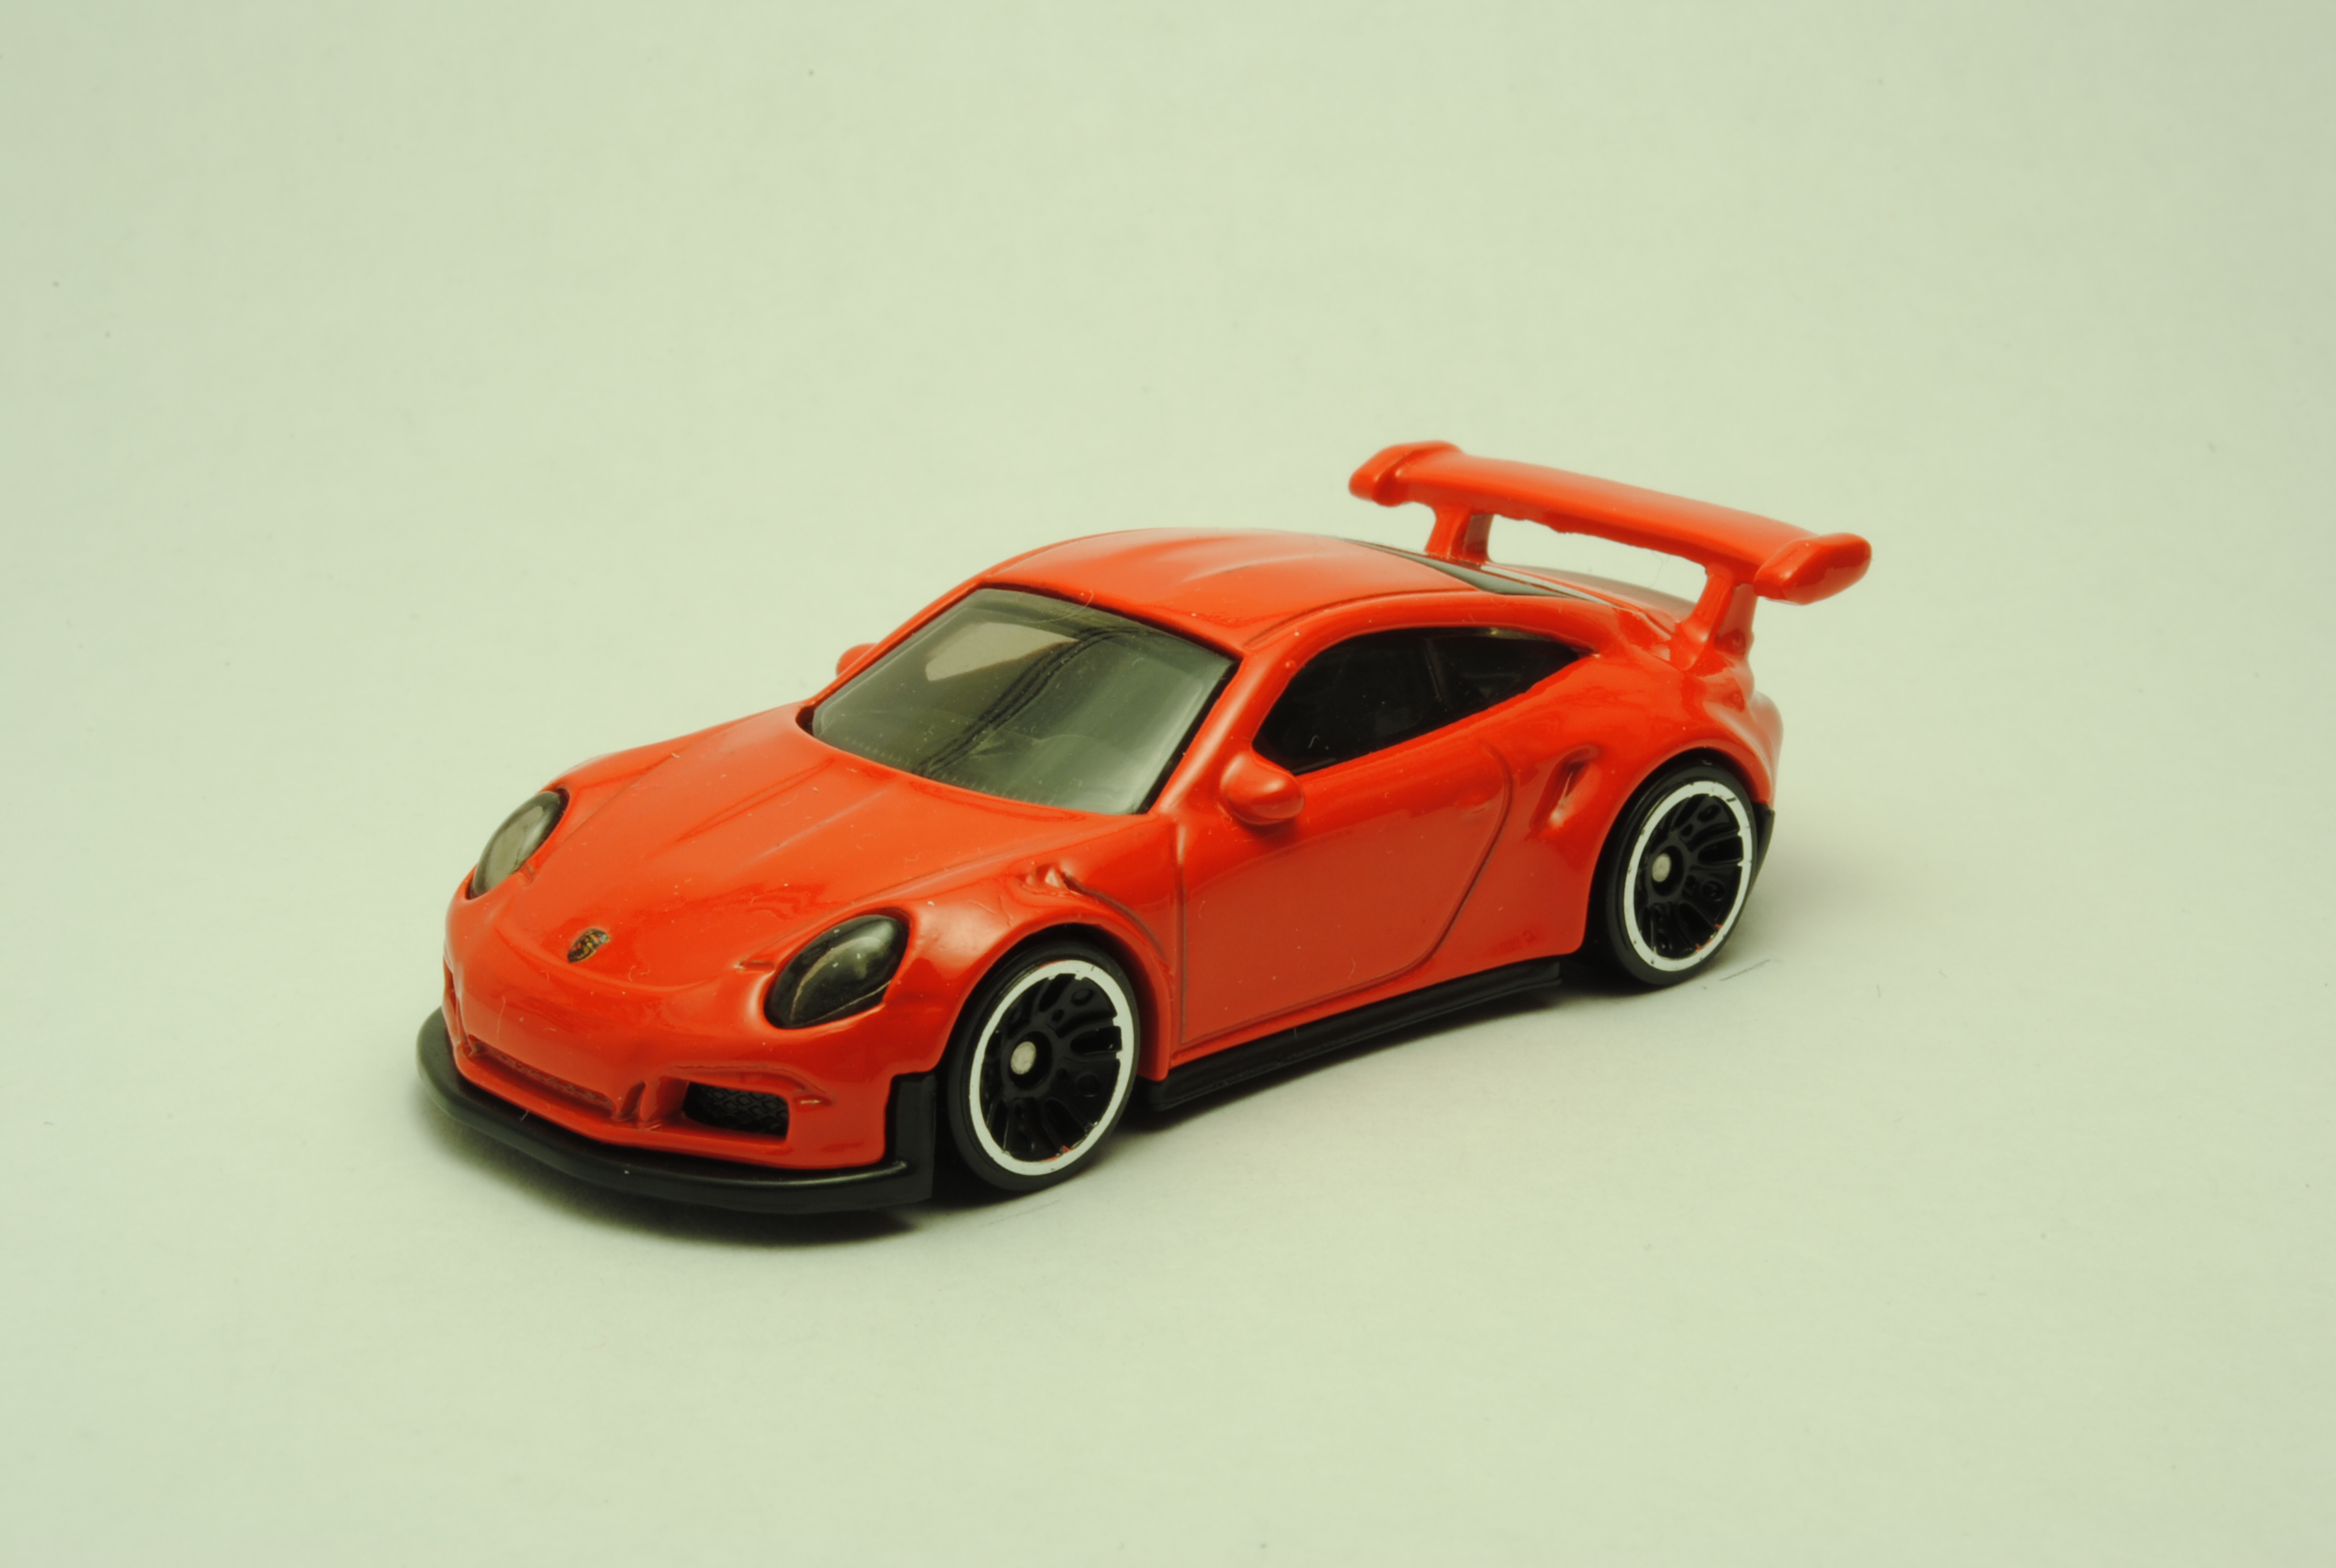 hot wheels porsche 911 gt3 rs orange